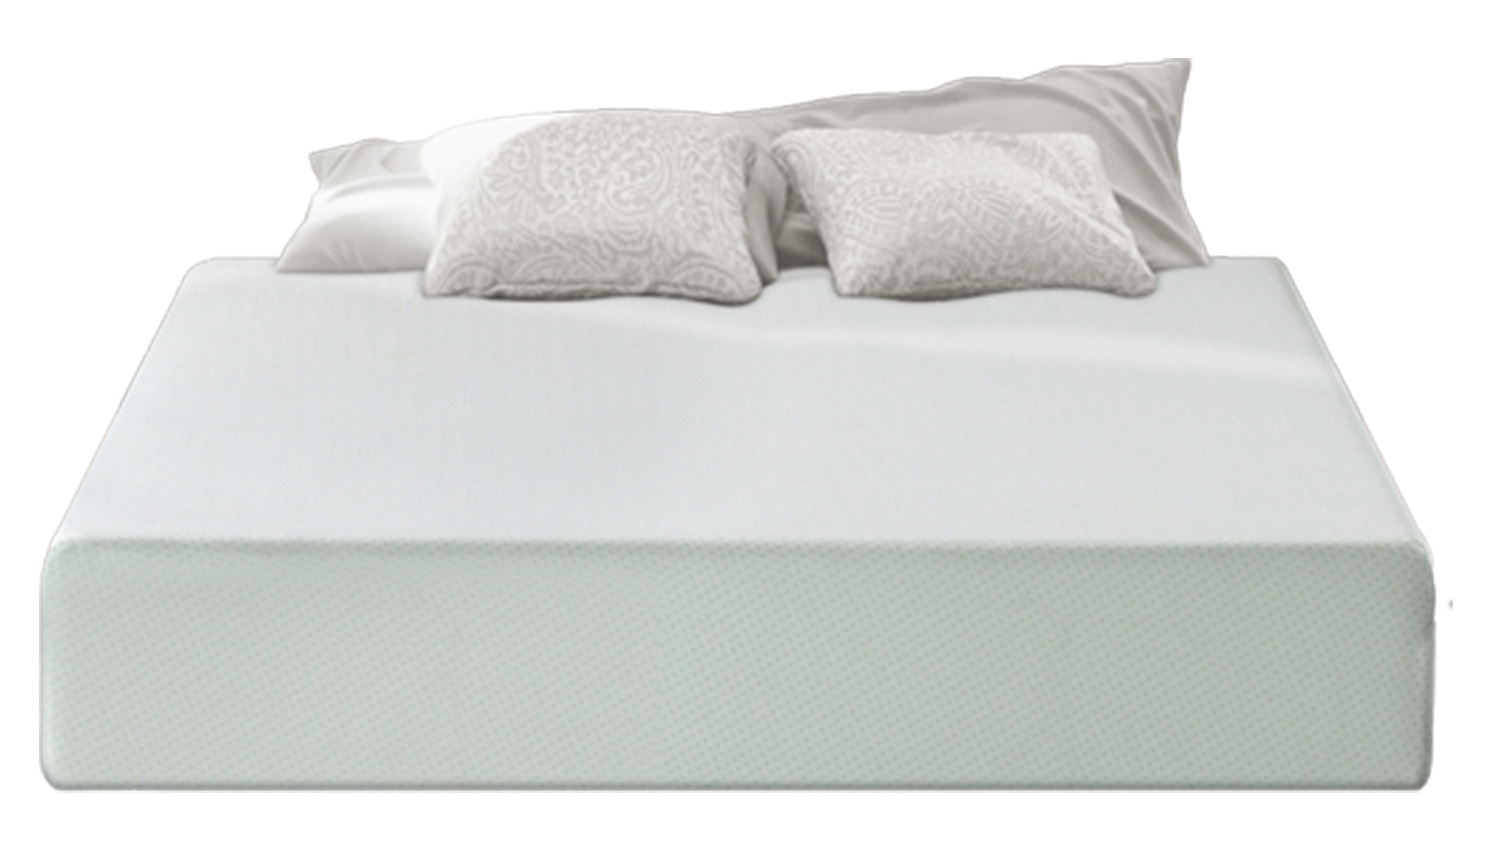 Best budget mattress: the Zinus Green Tea Memory Foam Mattress shown with white pillows on top